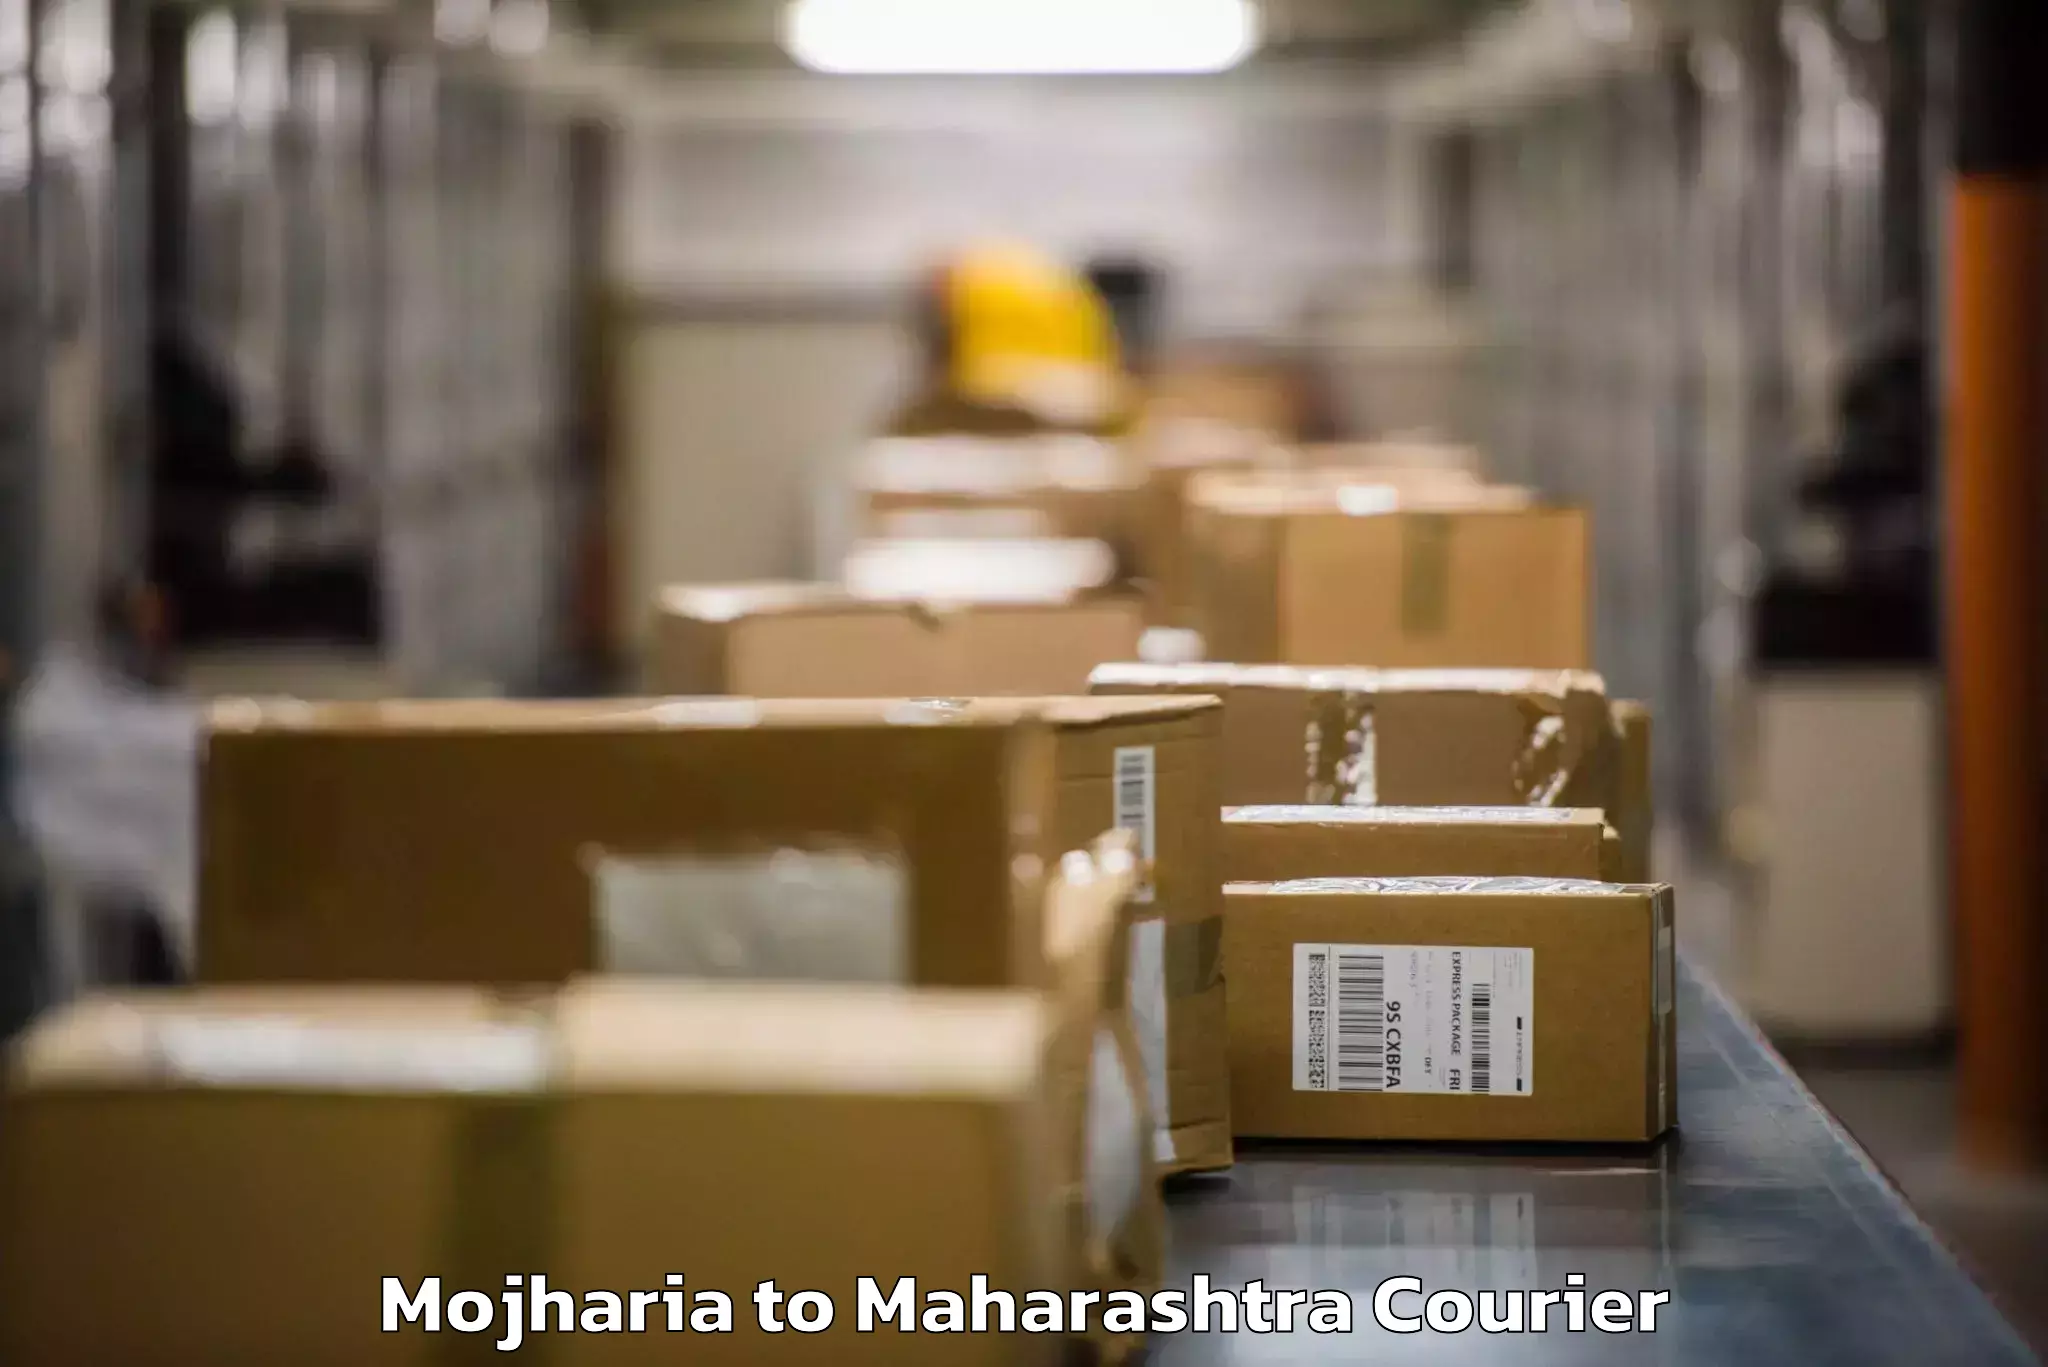 Baggage shipping schedule Mojharia to Georai